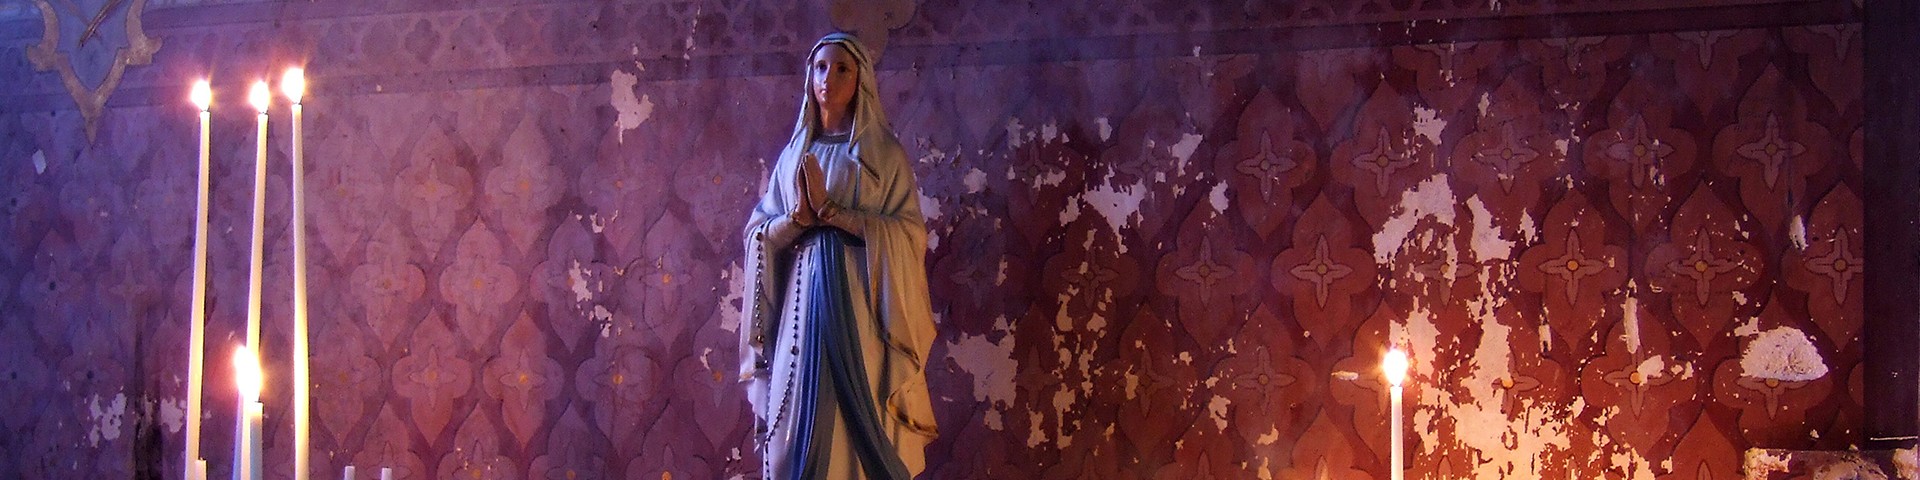 Maryja stoi u początku Bożych znaków